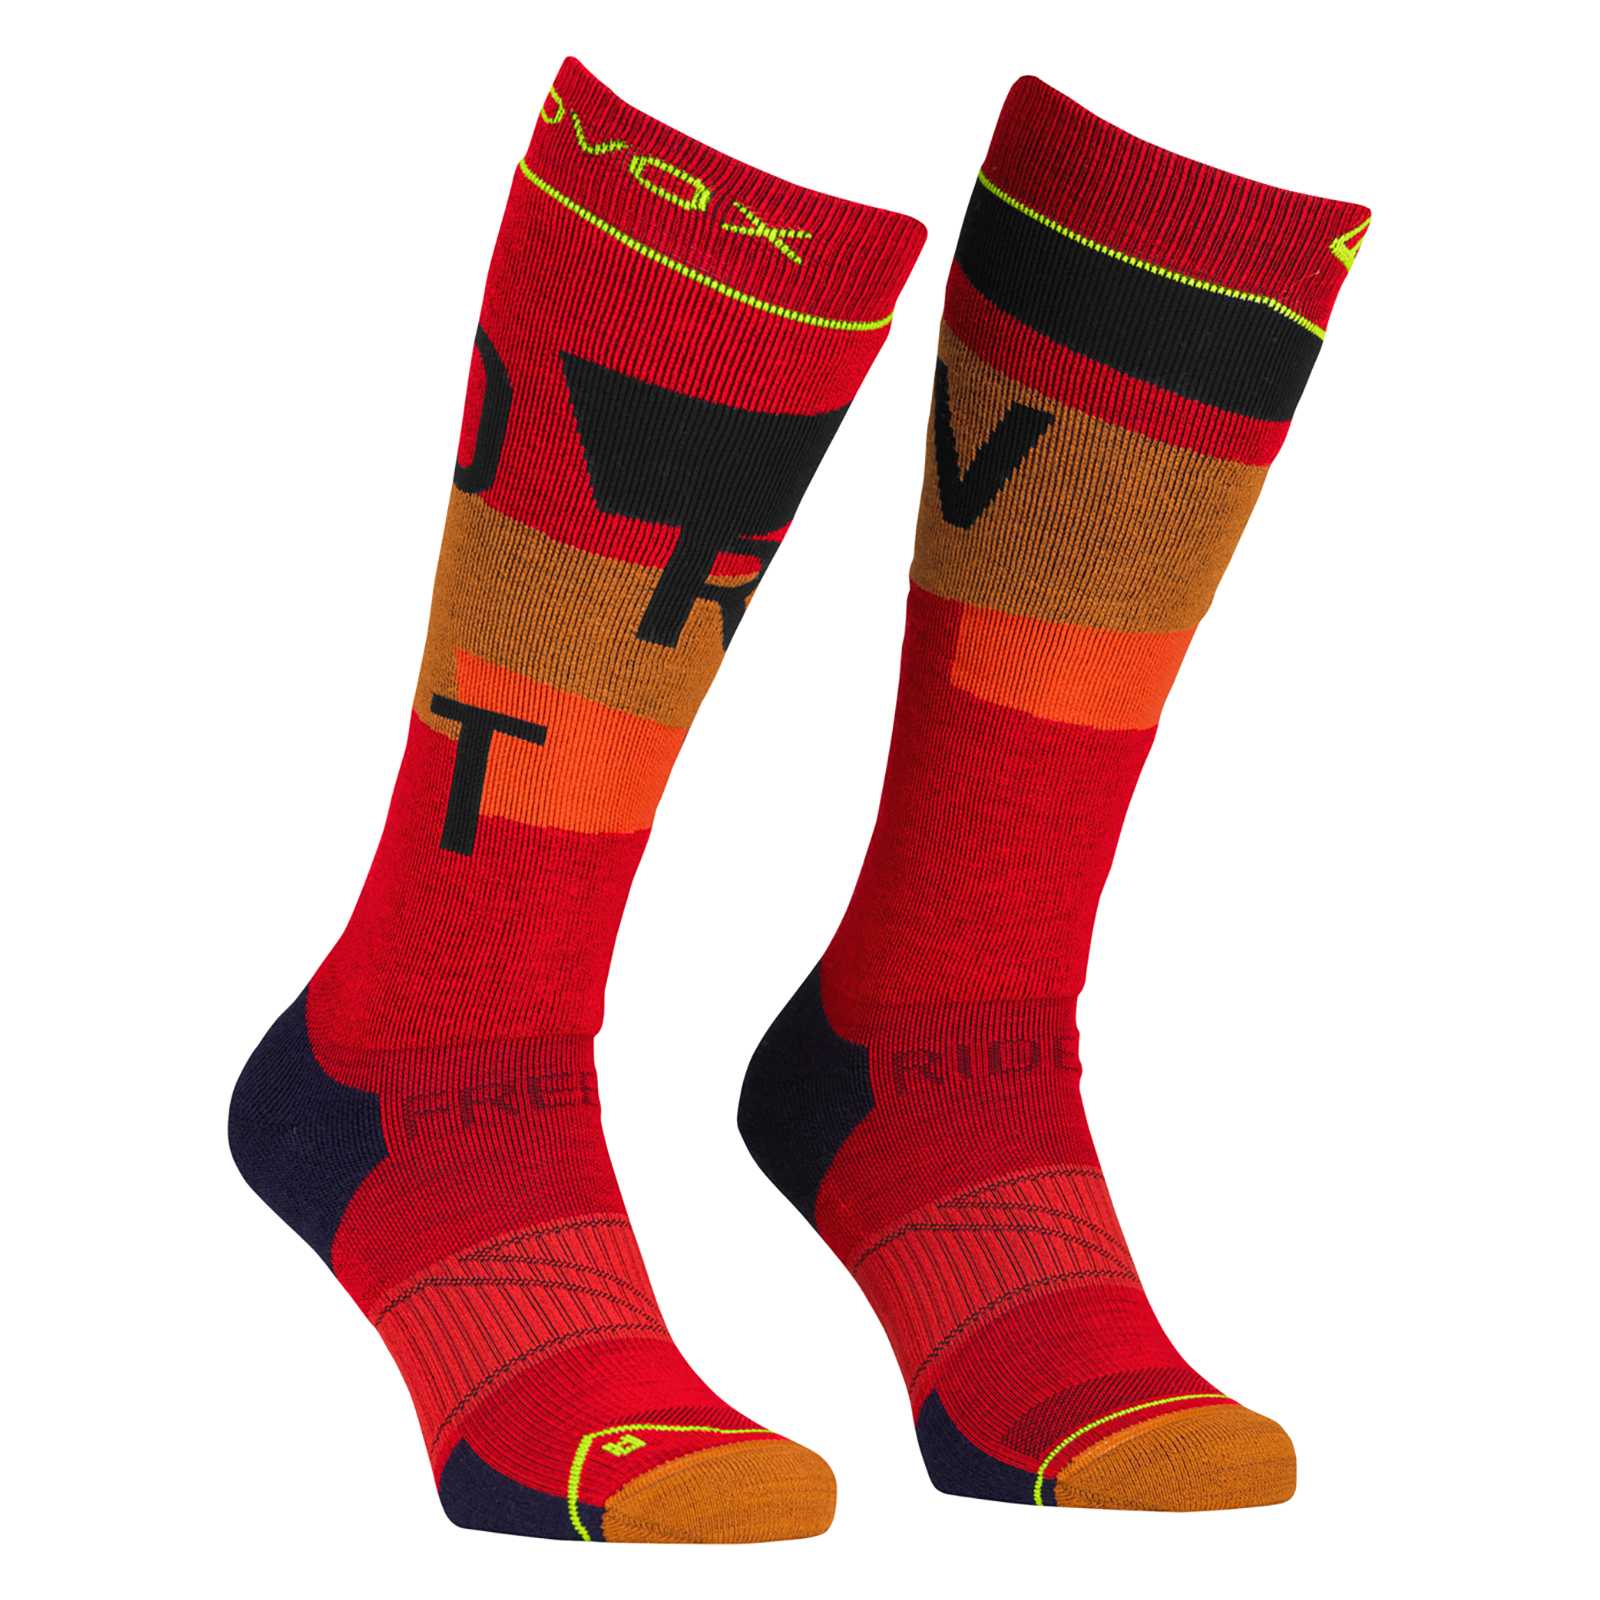 Ortovox Freeride Long Socks Cozy Herren Skisocken cengia rossa